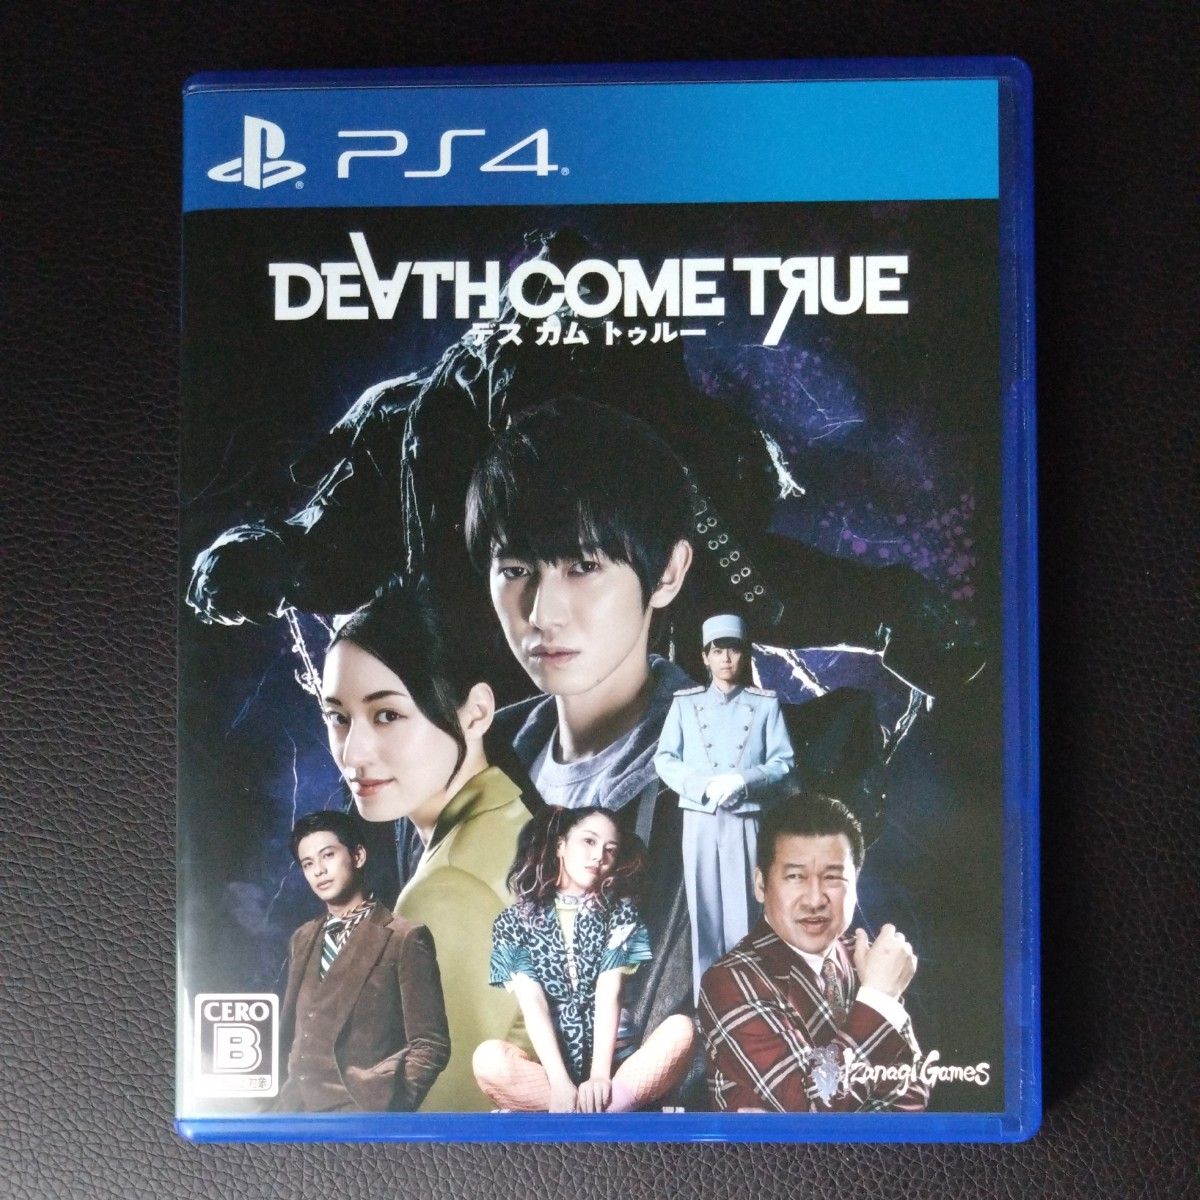 【PS4】 Death Come True デスカムトゥルー